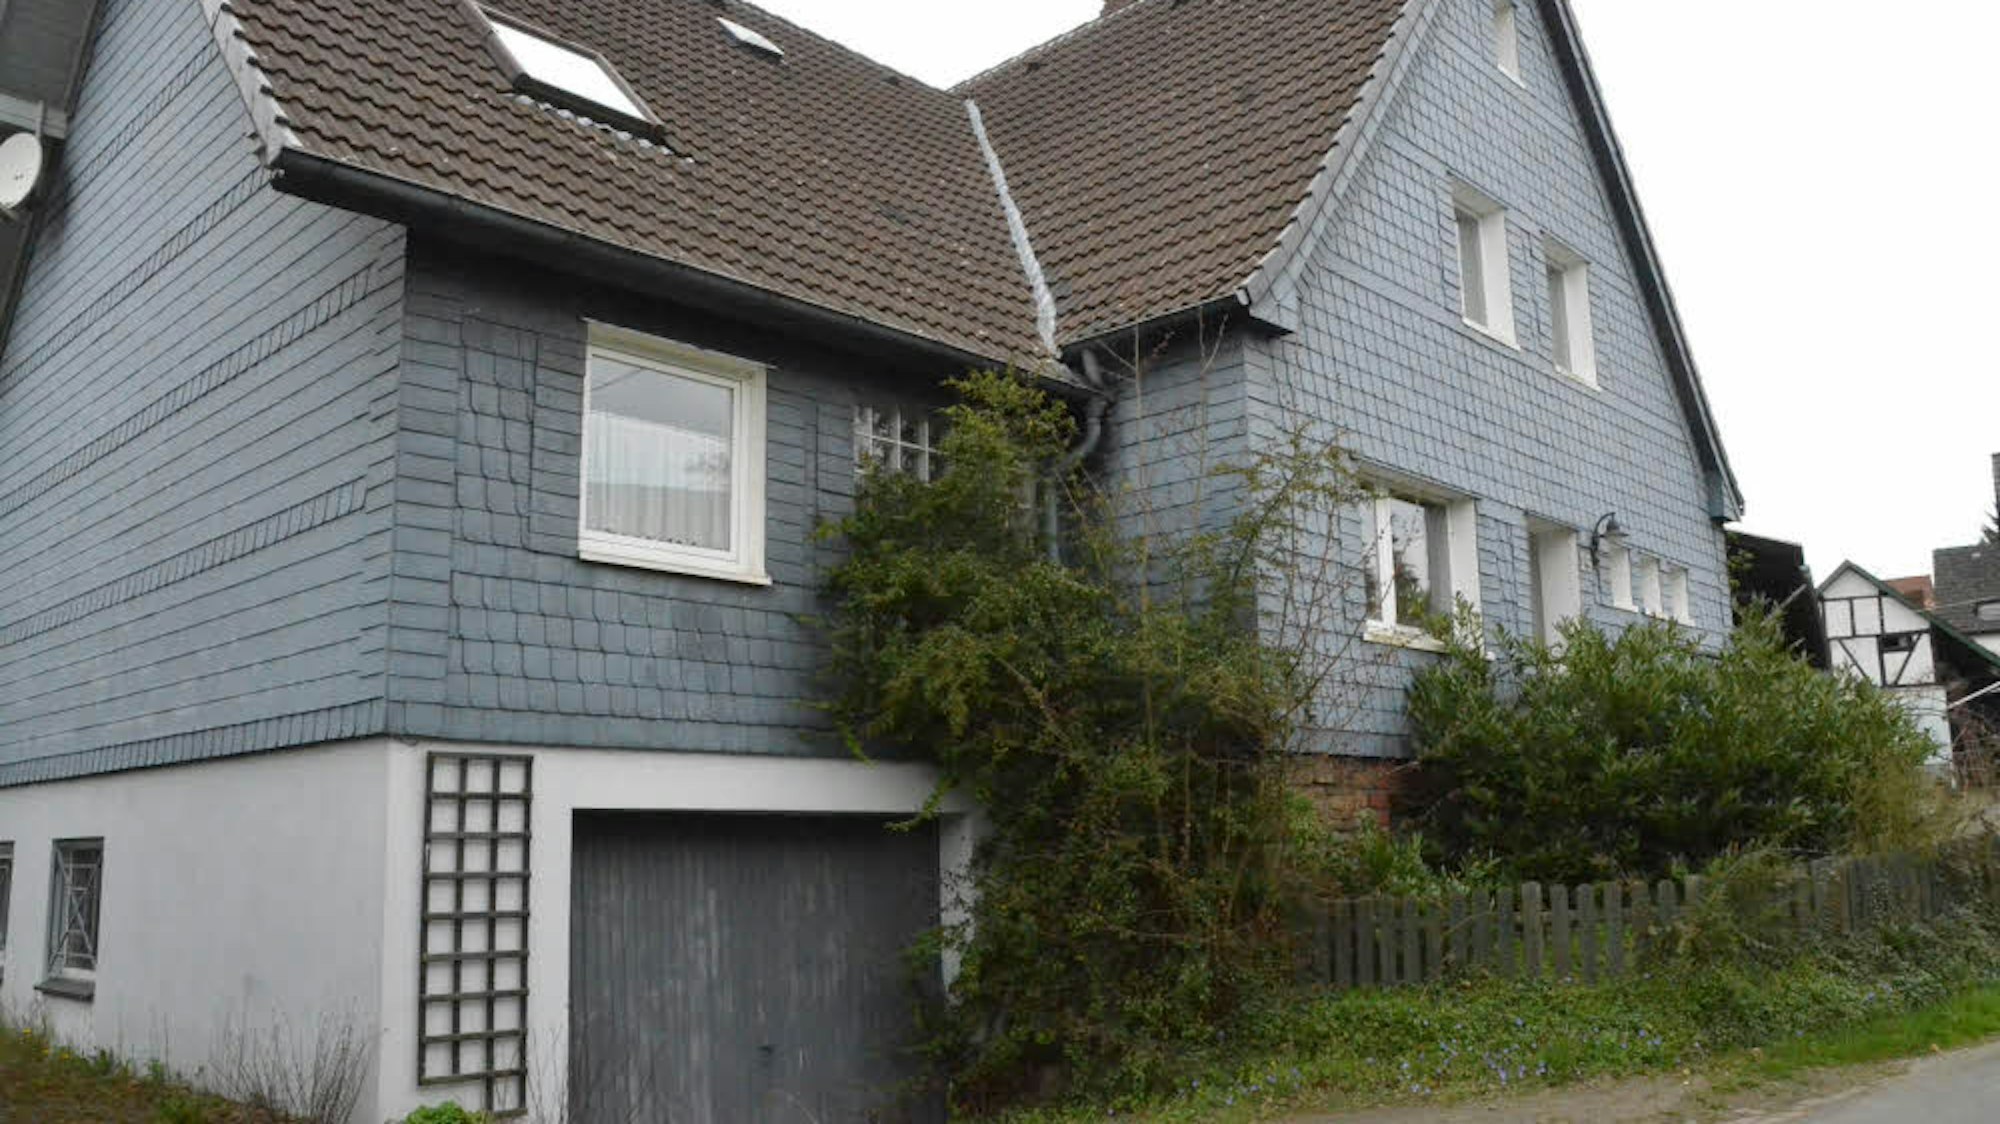 In der Morsbacher Ortschaft Steimelhagen steht ein großes Haus, dessen Großteil mit Schieferplatten verkleidet ist. Der Vorgarten ist zugewachsen.